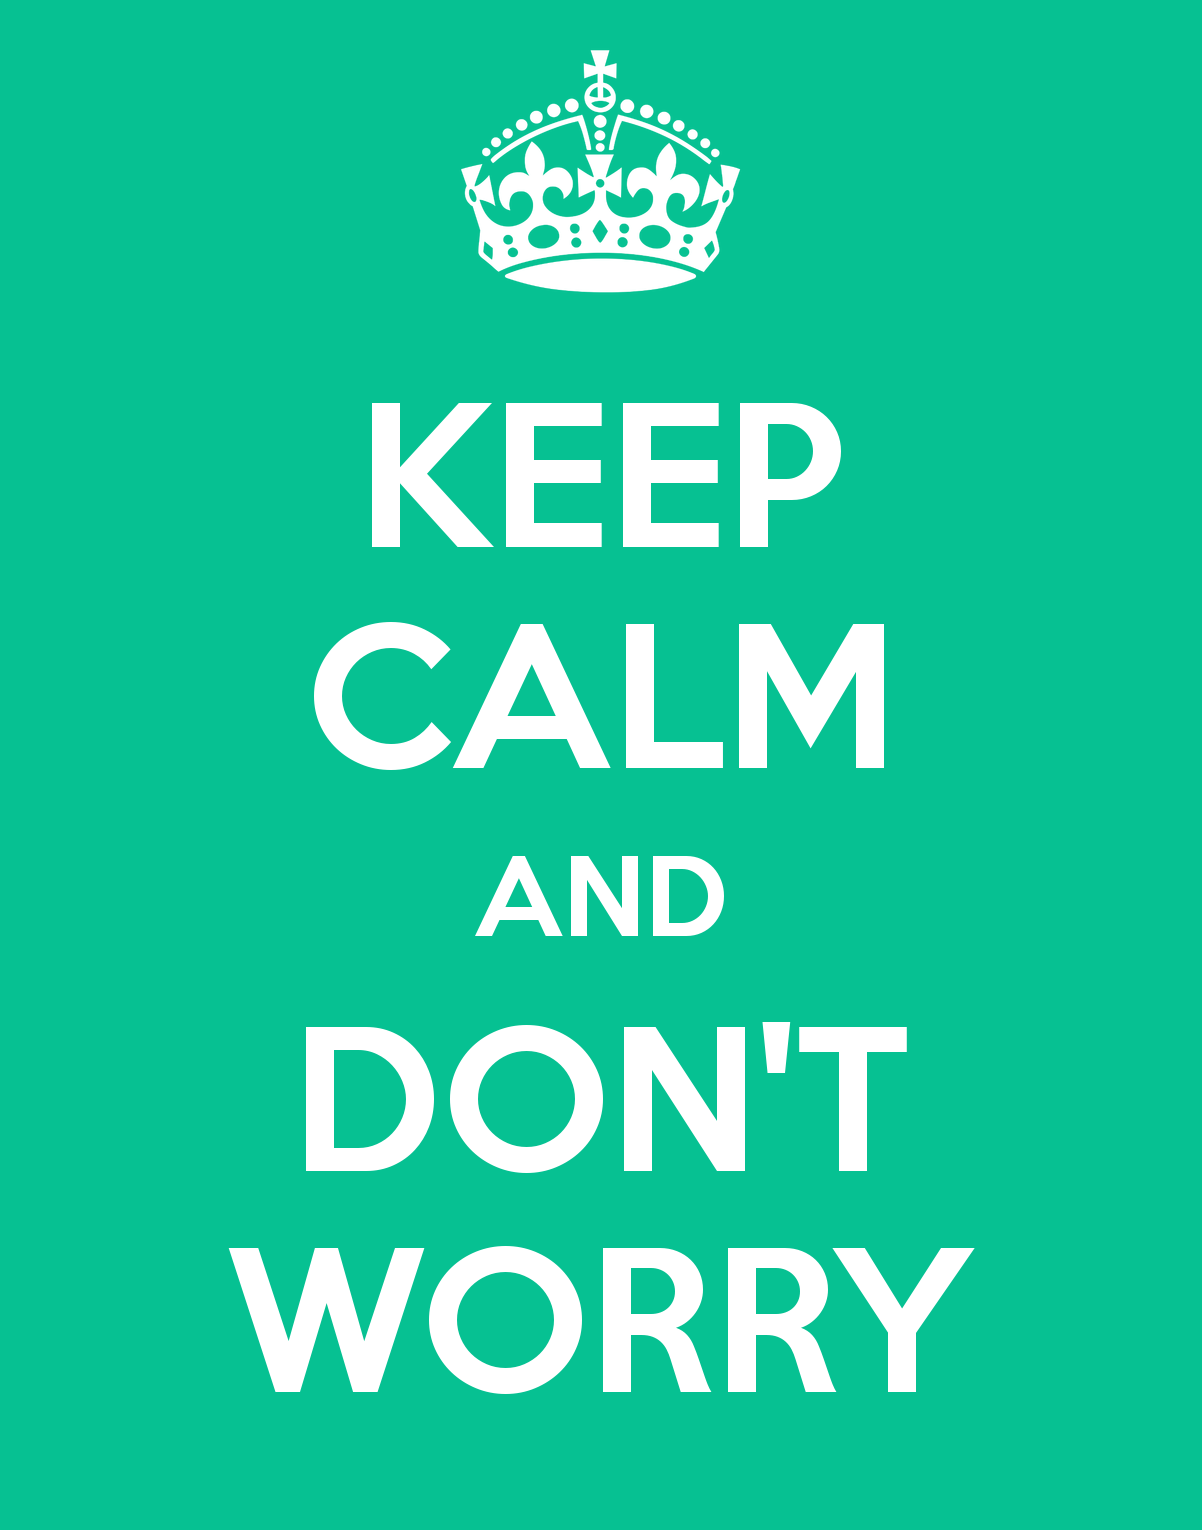 Don't worry. Keep Calm and don't worry. Keep Calm and be Happy. Don't worry be Happy. Don t worry dont